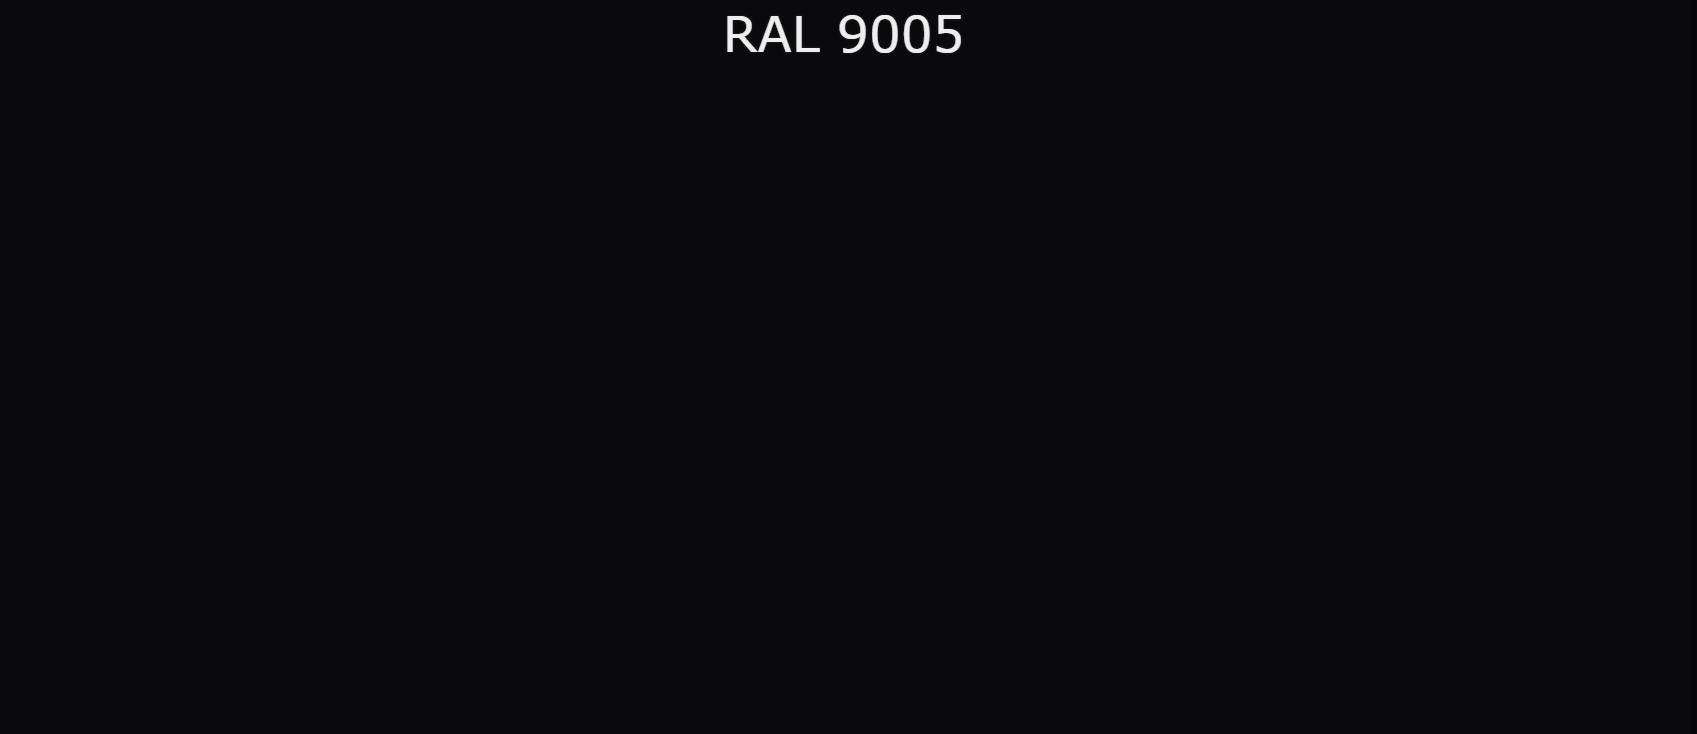 Рал 9005 черный янтарь. Цвет RAL 9005 черный янтарь. Черный цвет по RAL 9005. Черный цвет RAL 9005.